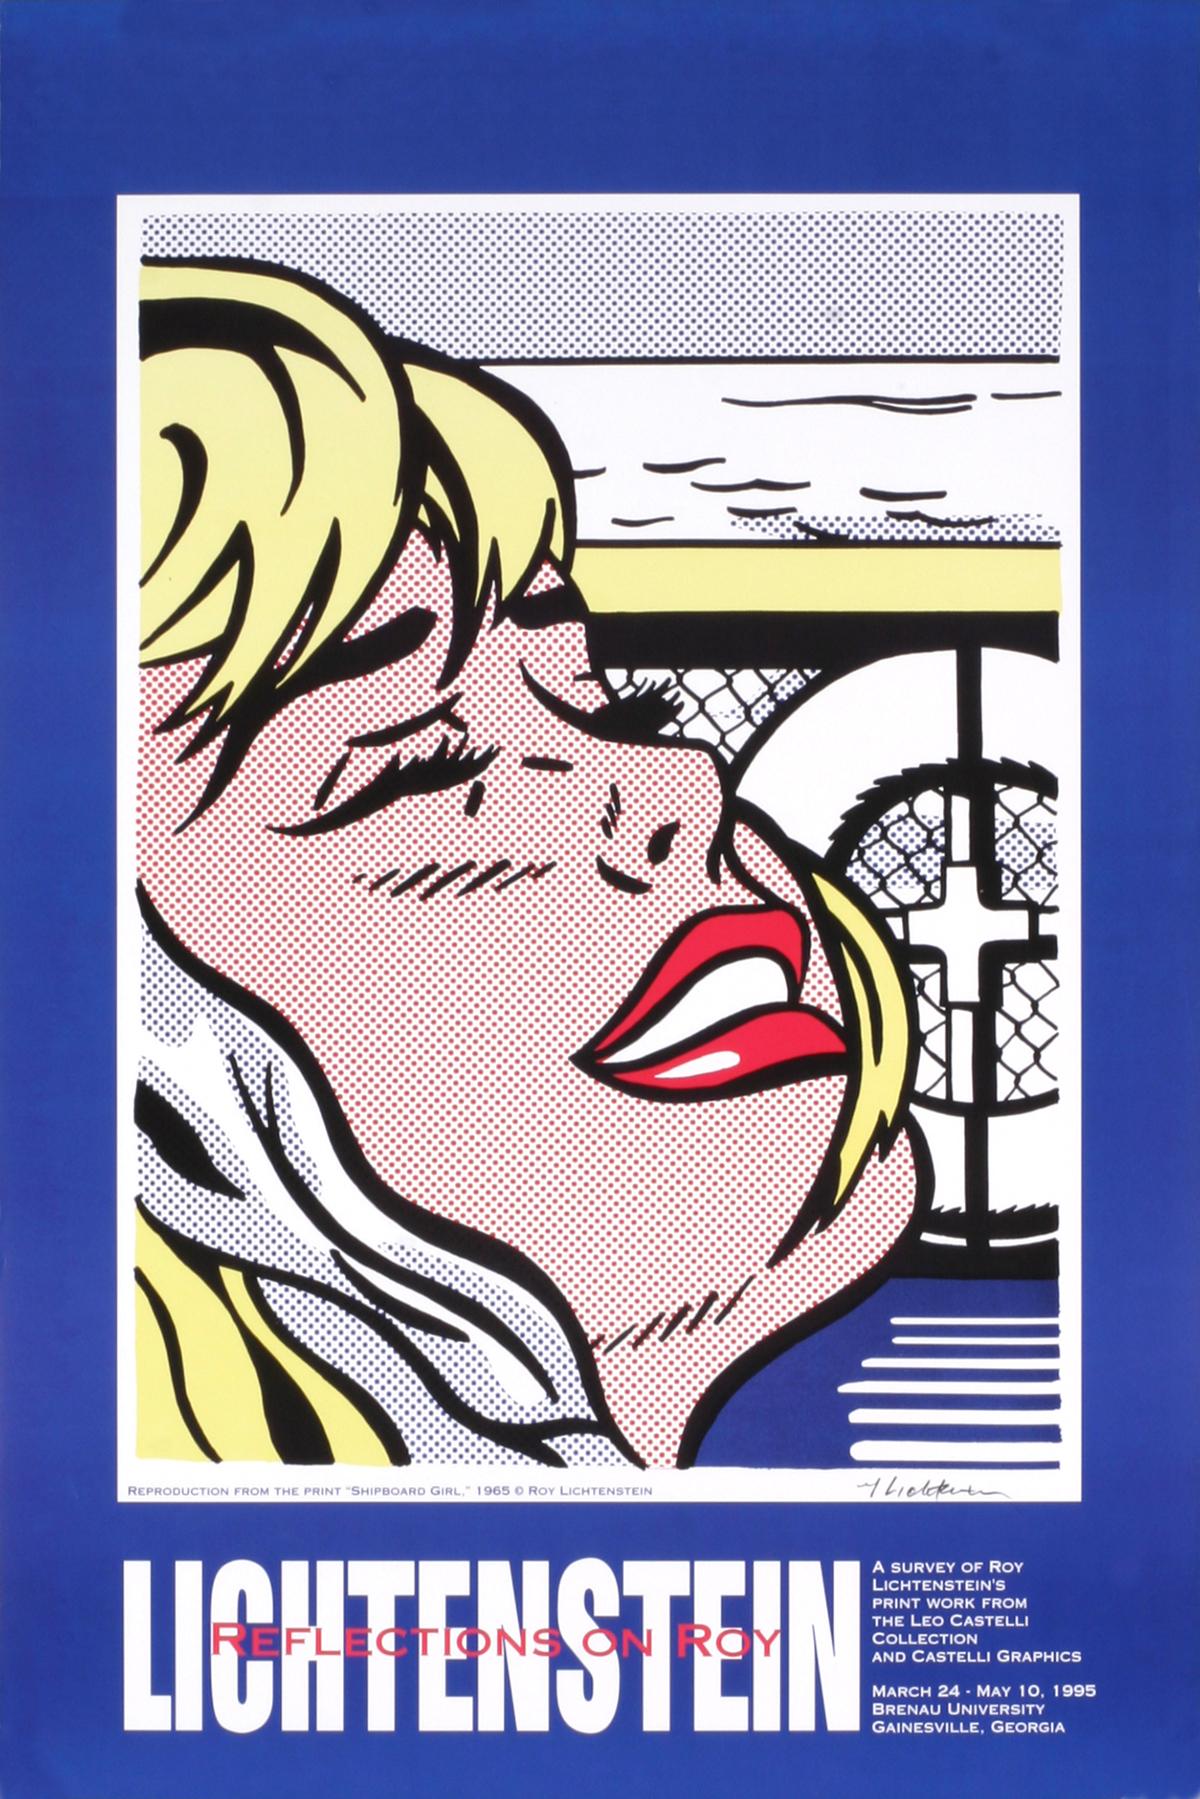 Shipboard Girl-ORIGINAL Exhibition Poster - Print by Roy Lichtenstein